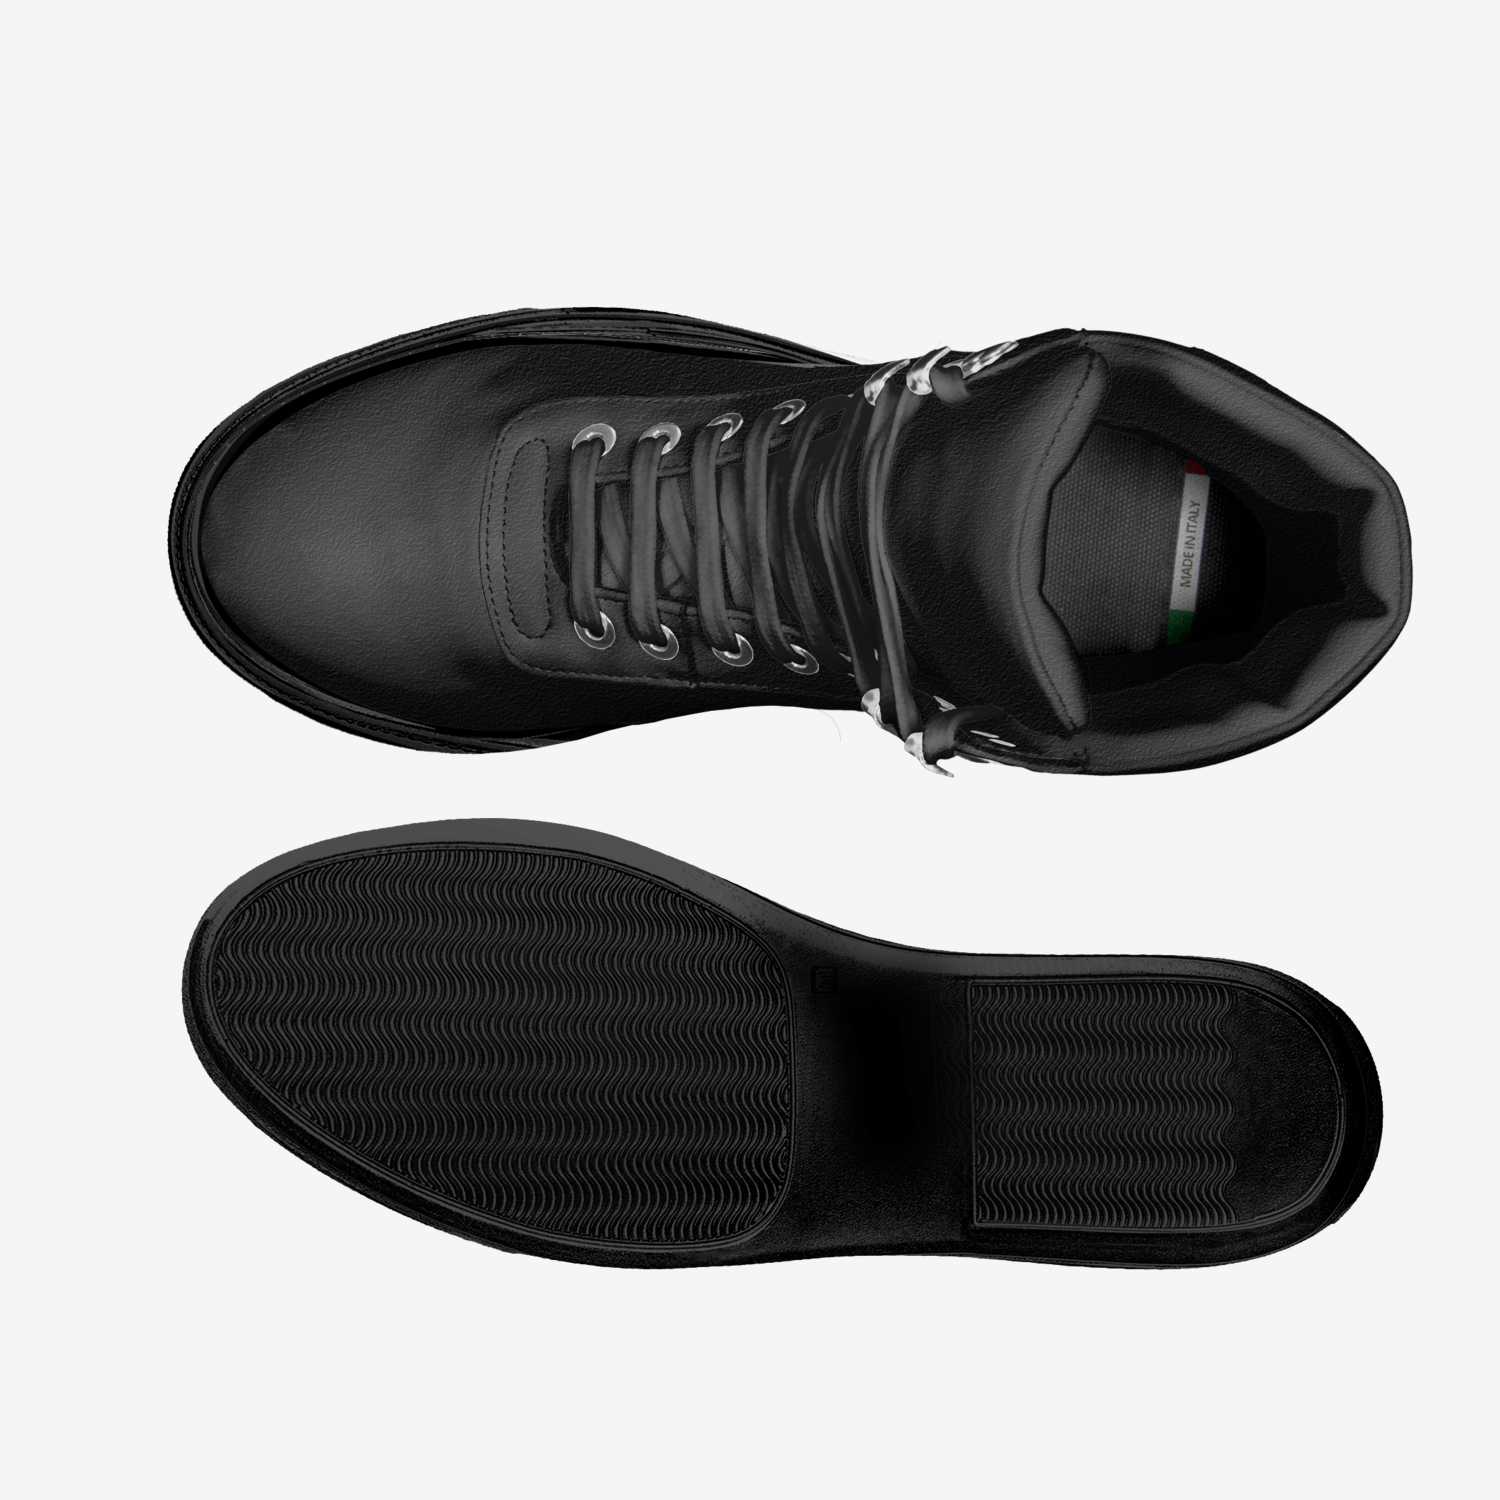 KiXx  A Custom Shoe concept by Kickman Teddy